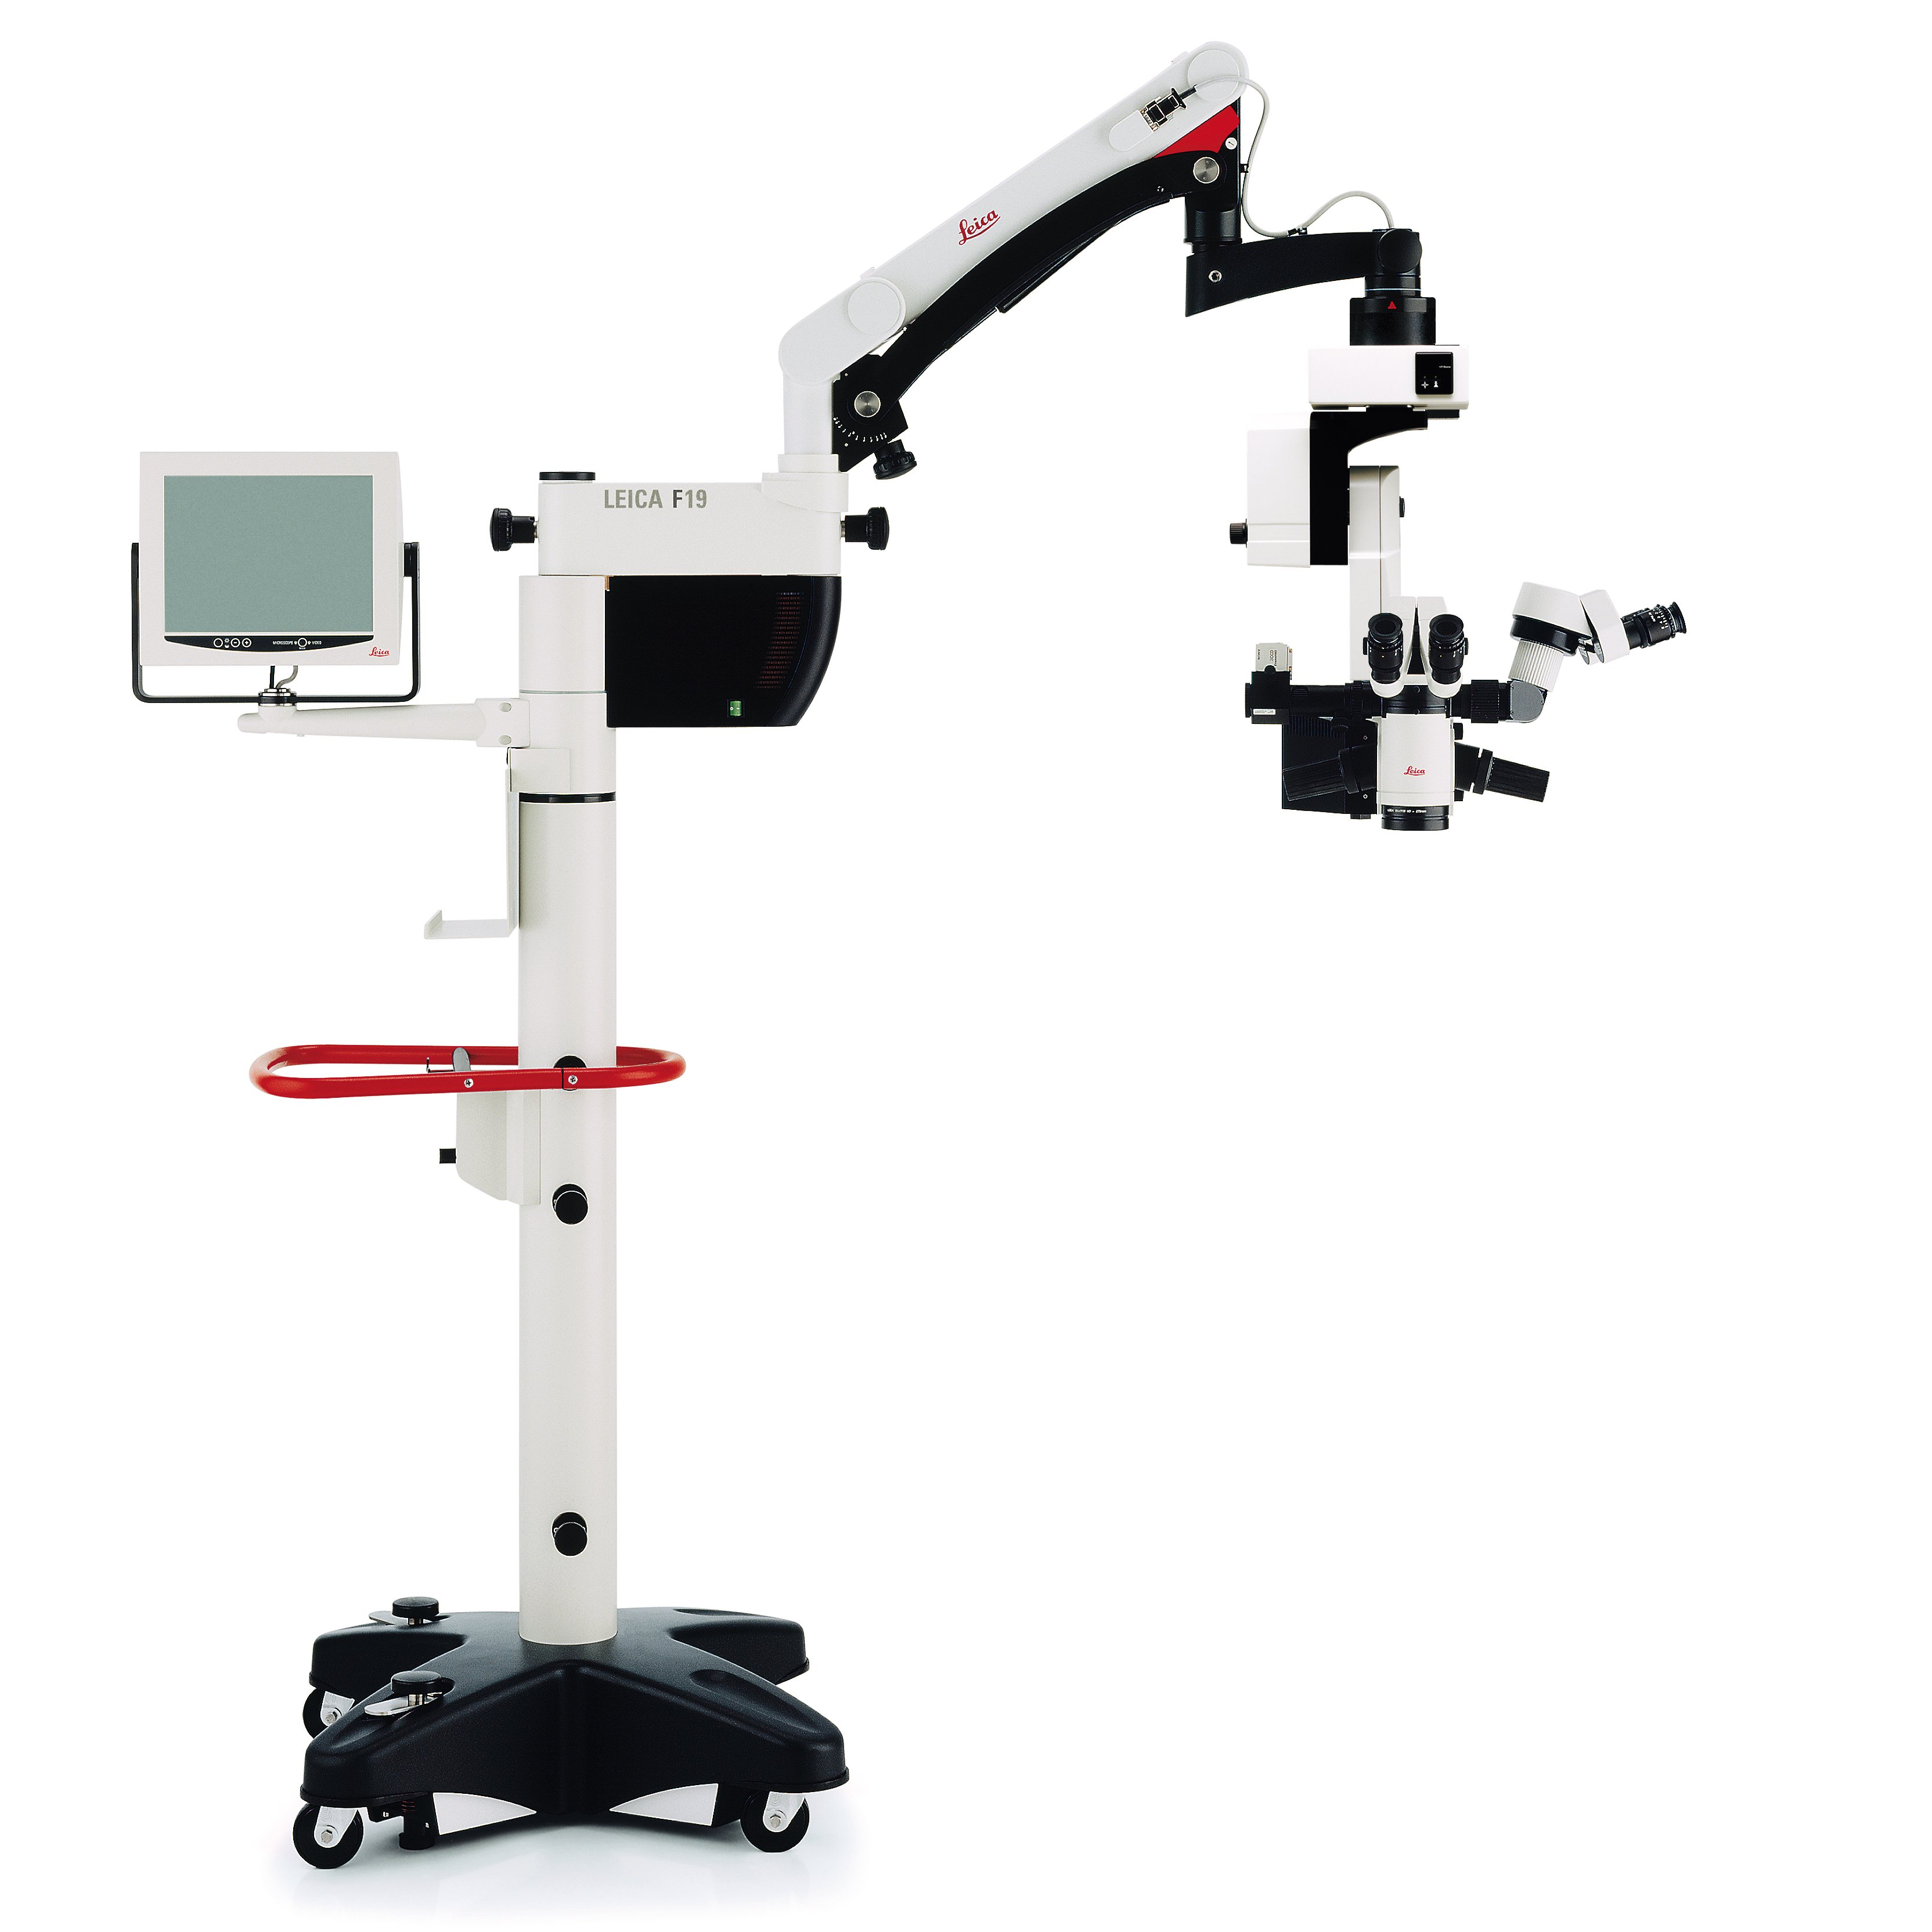 常规眼科手术显微镜 Leica M820 F19